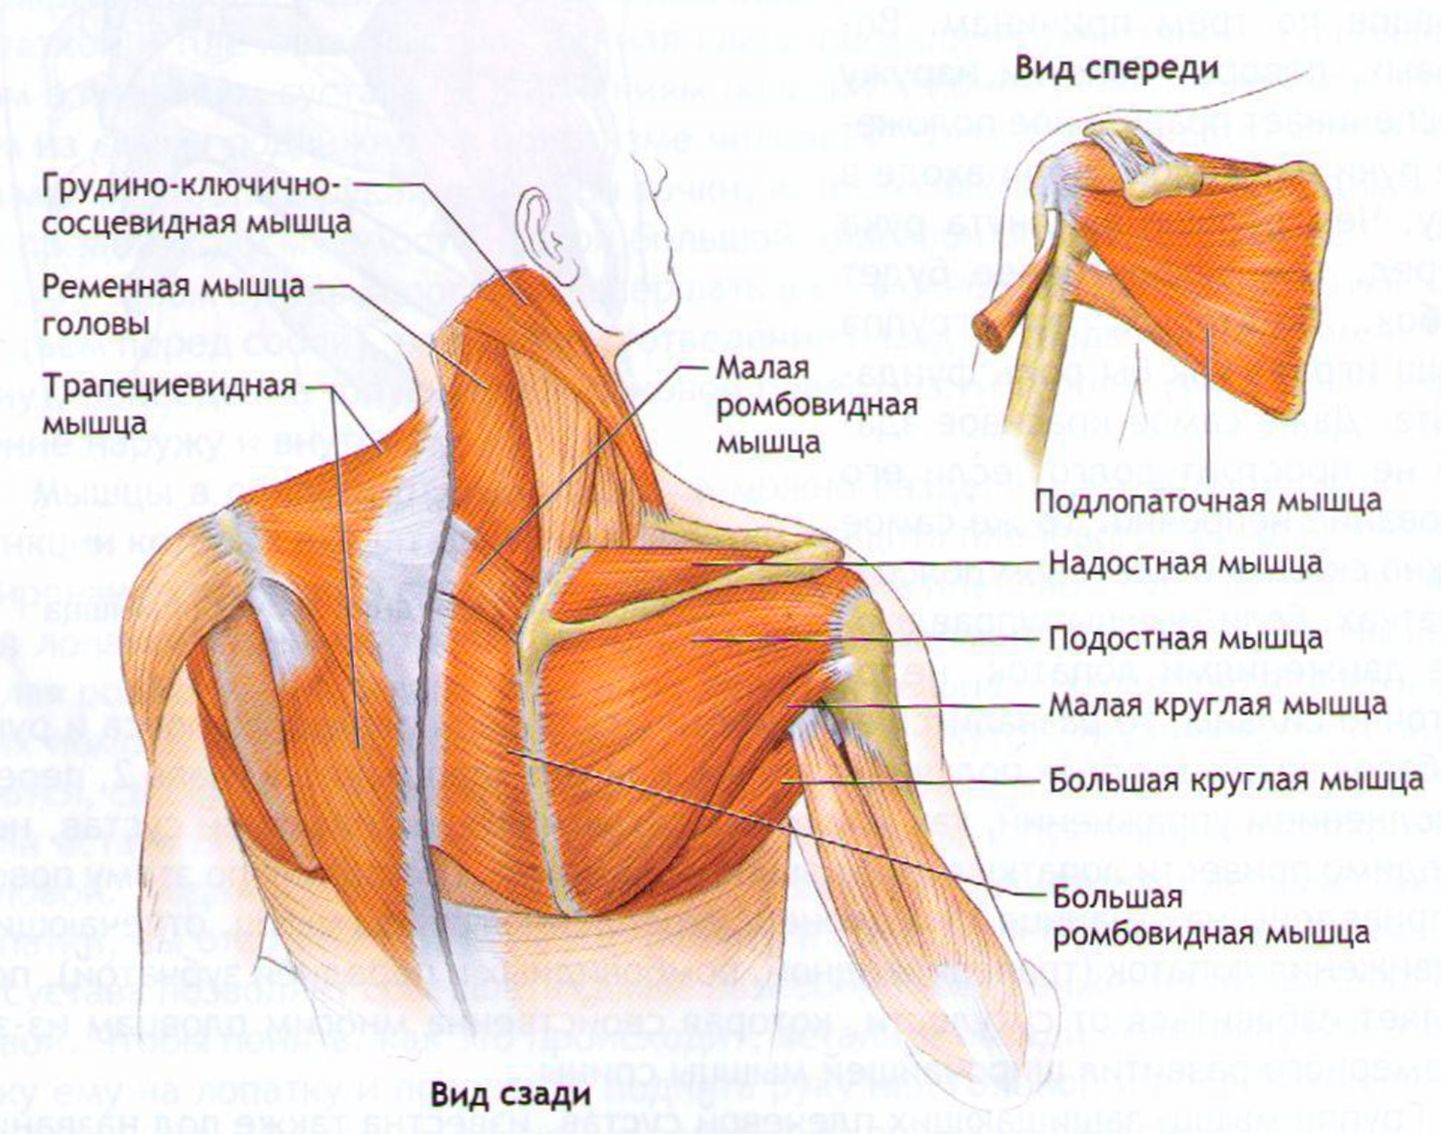 Строение мышц шеи и плечевого пояса сзади